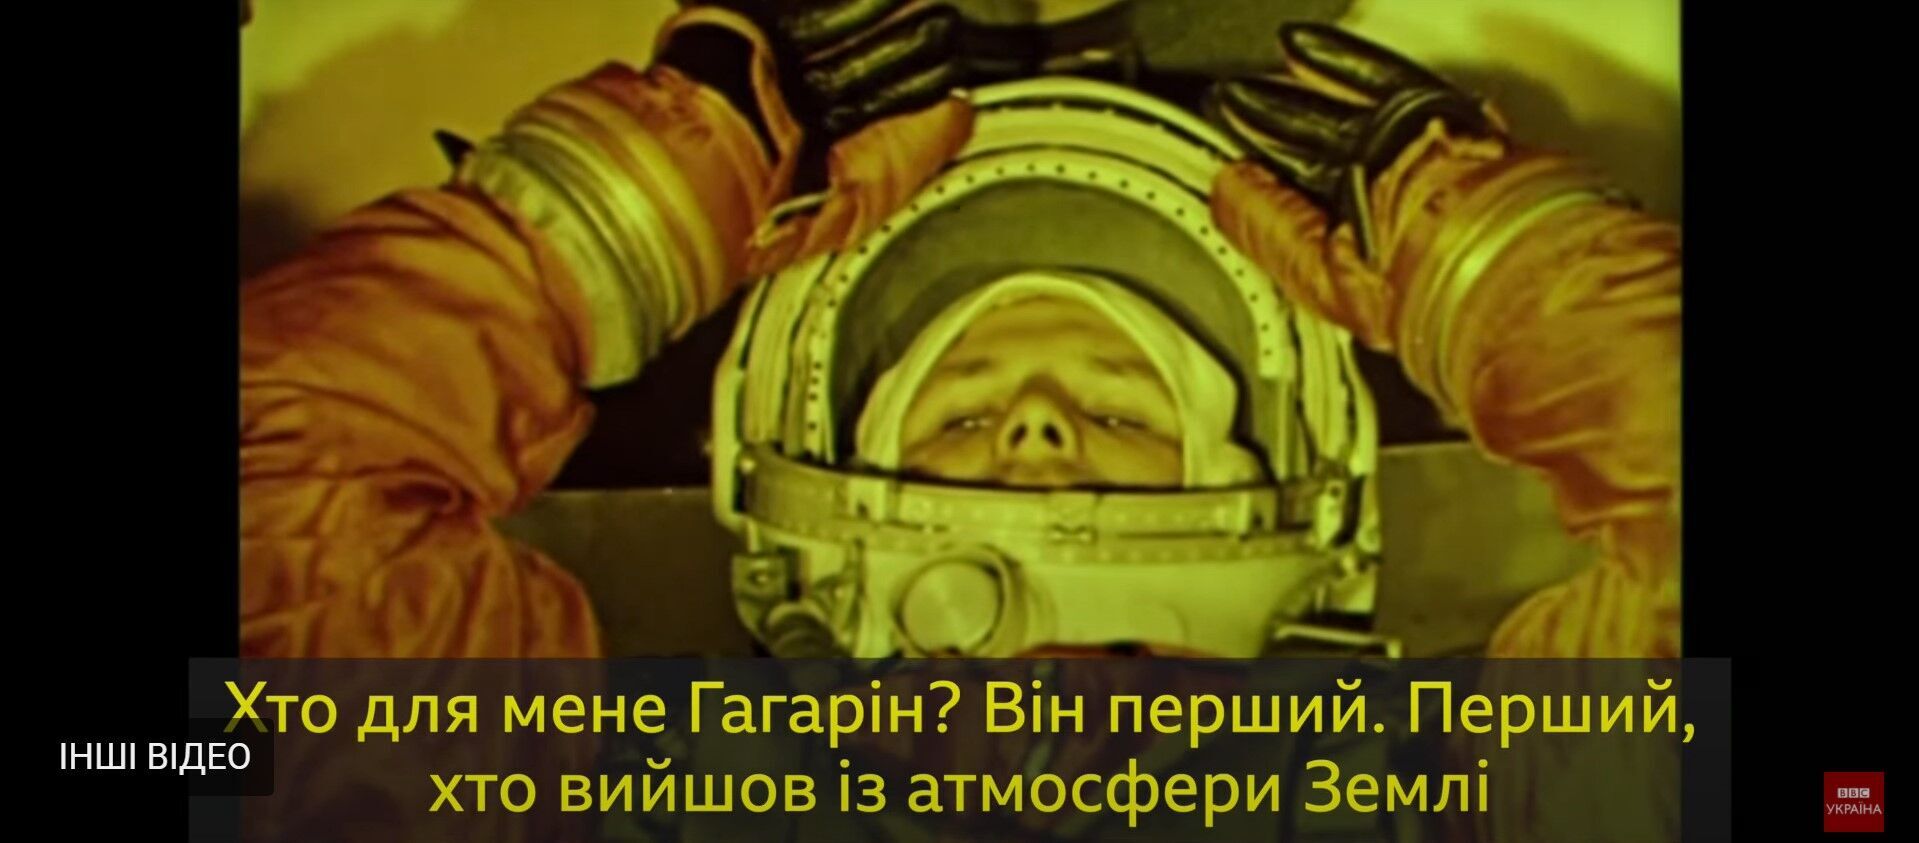 Воспоминания украинцев о полете Гагарина в космос.